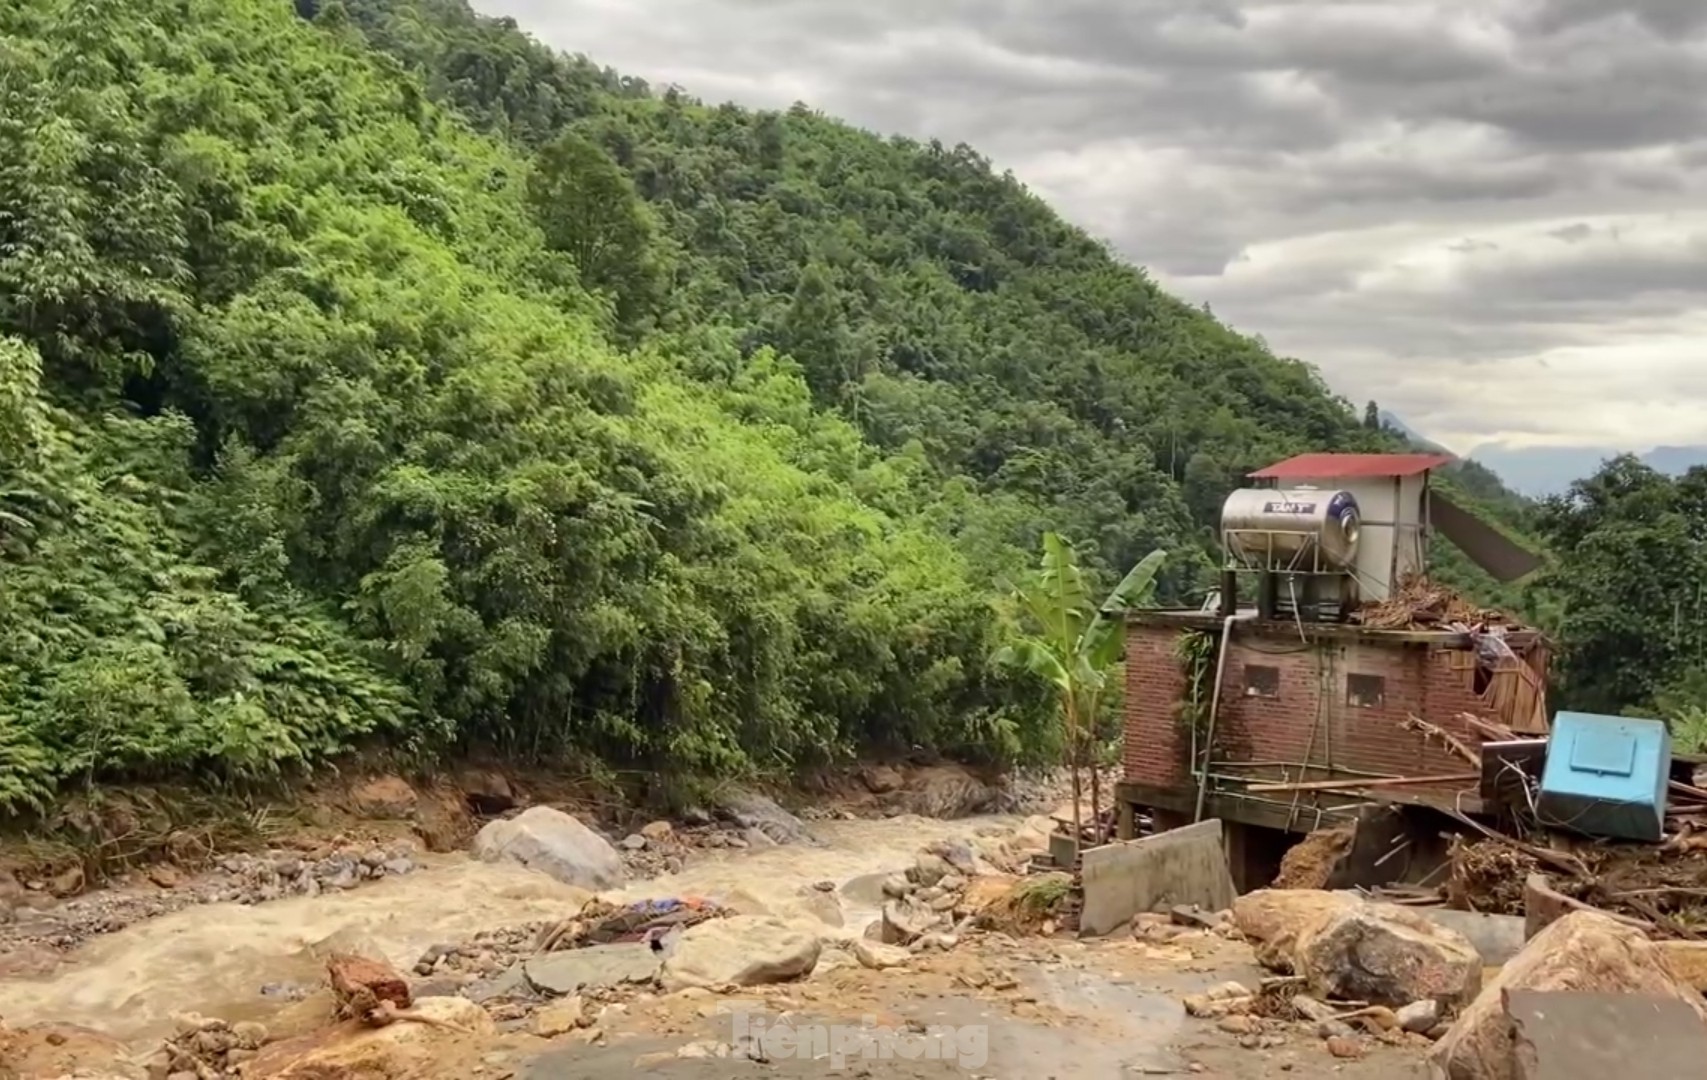 Cảnh hoang tàn nơi lũ quét vừa đi qua ở Lào Cai - Ảnh 8.